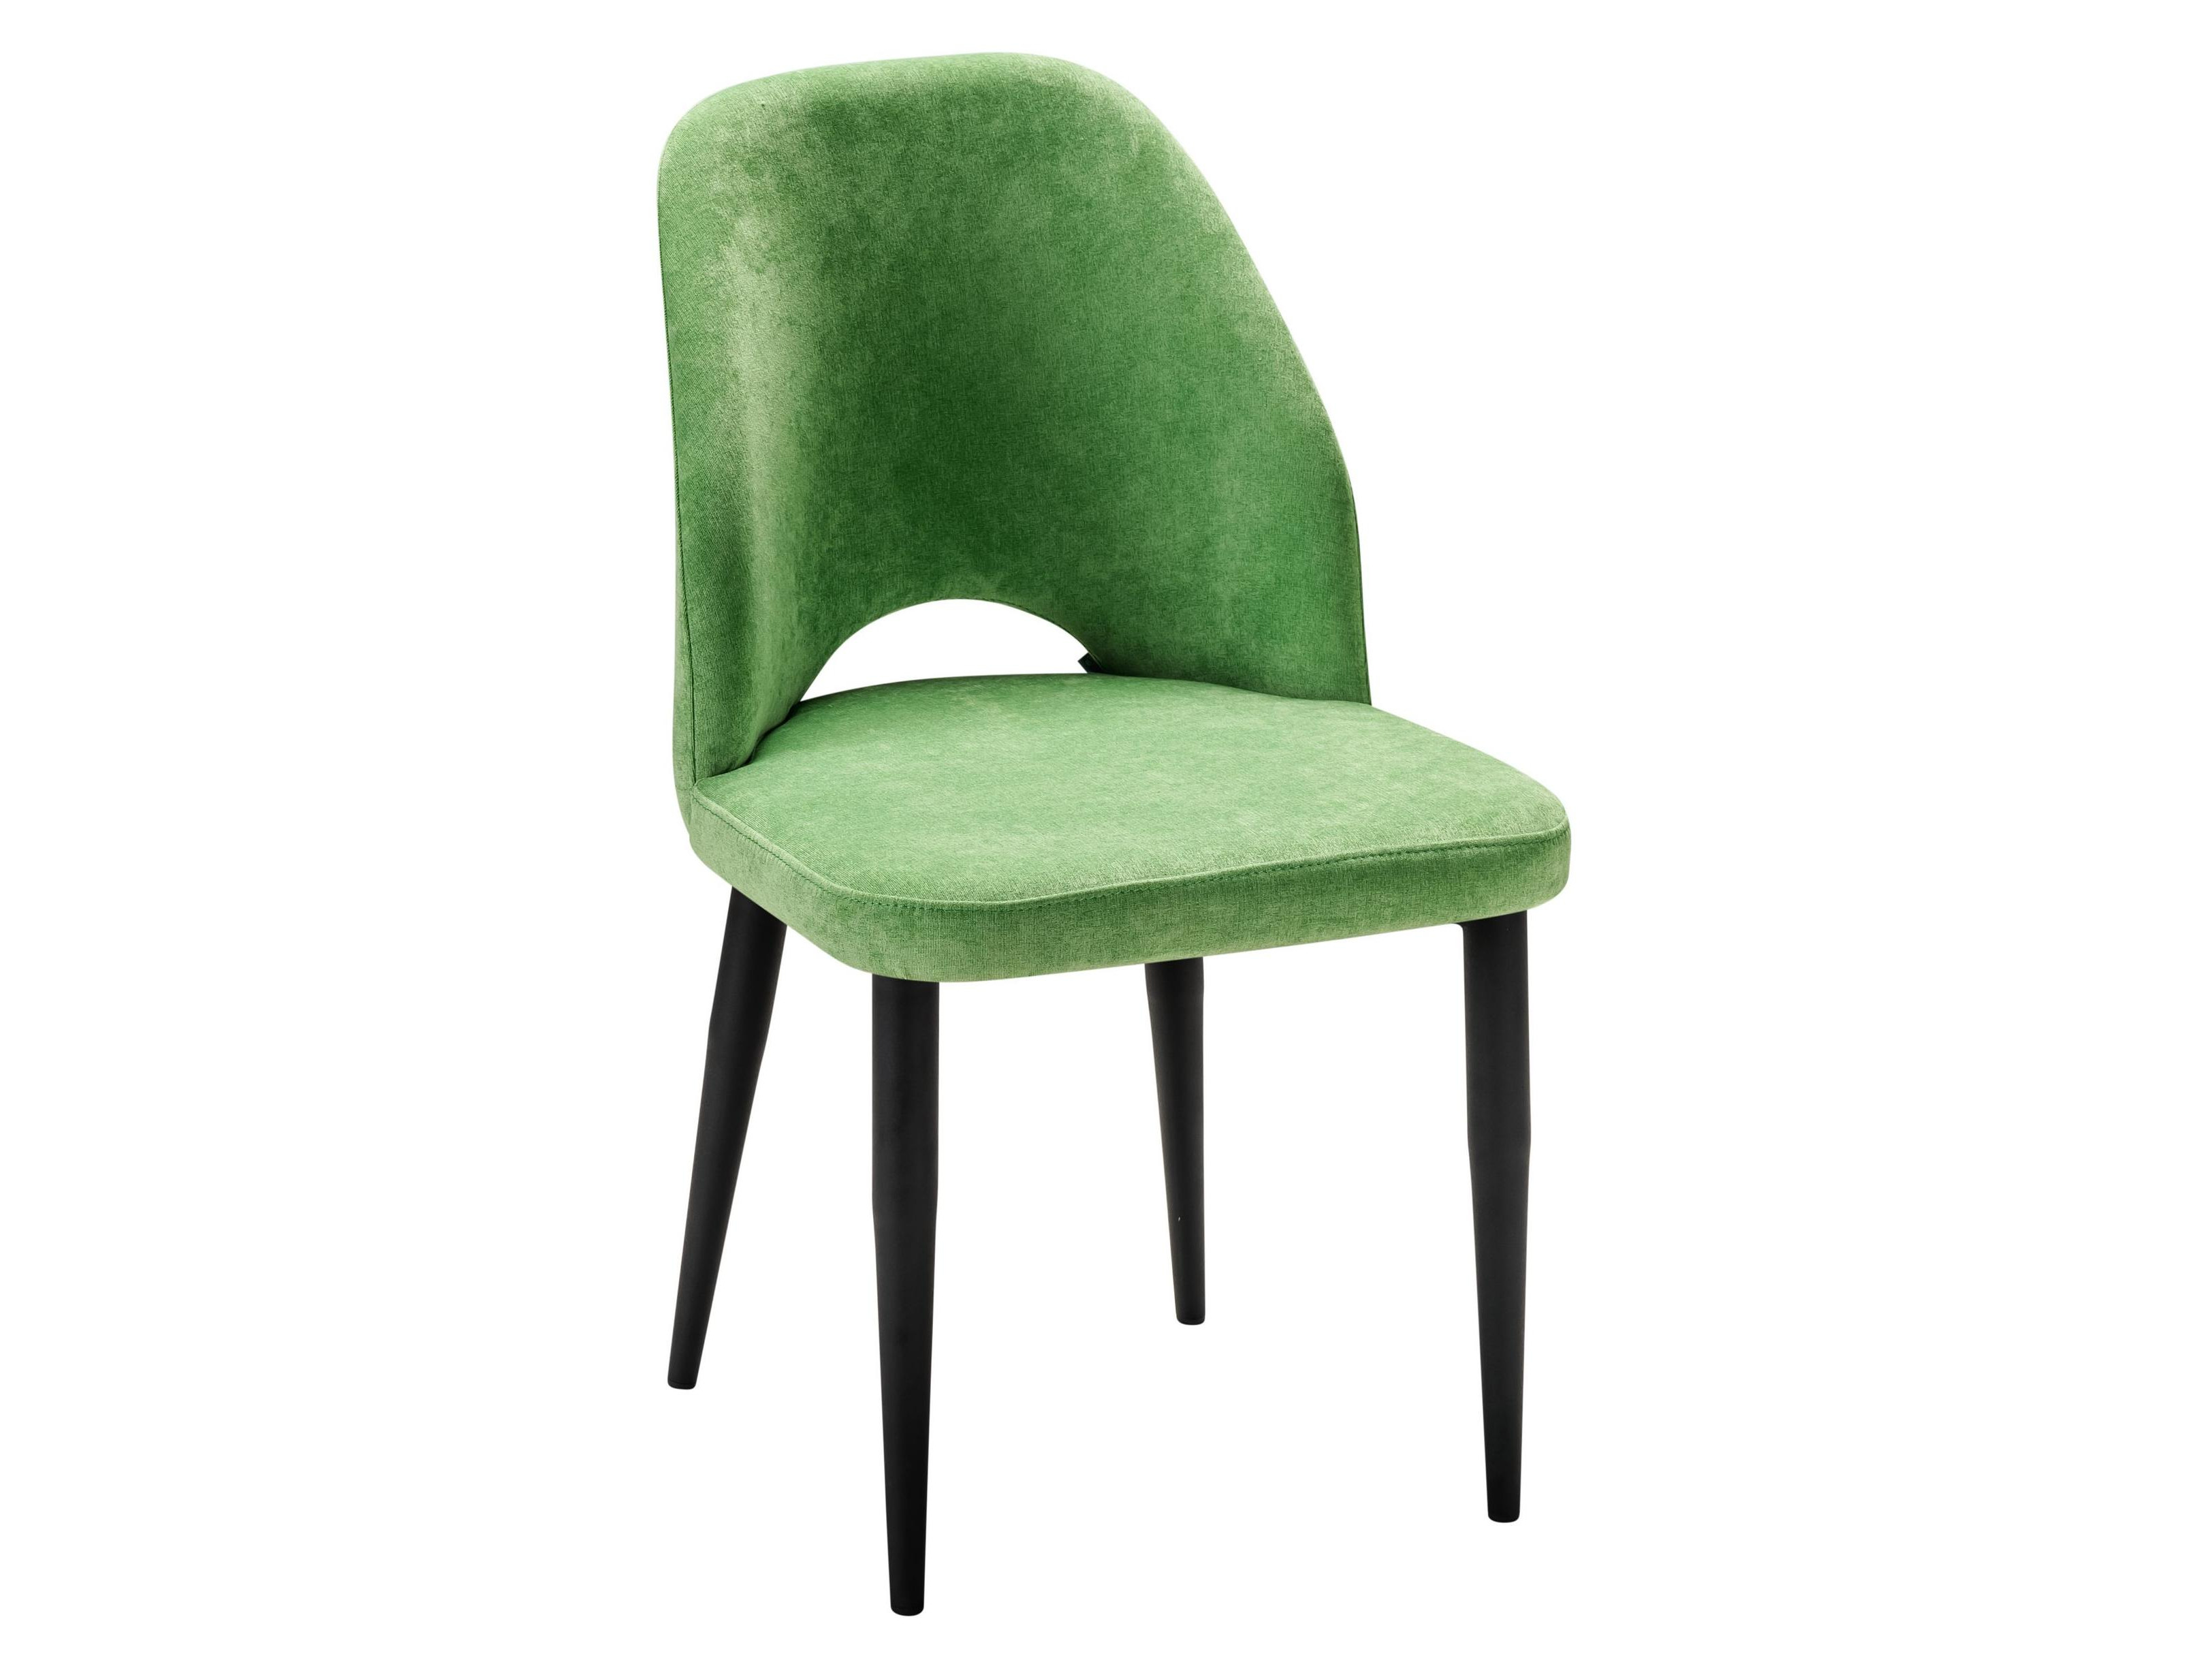 Стул Ledger зеленый/черный Зеленый, Металл стул ledger измр натуральный дуб зеленый металл